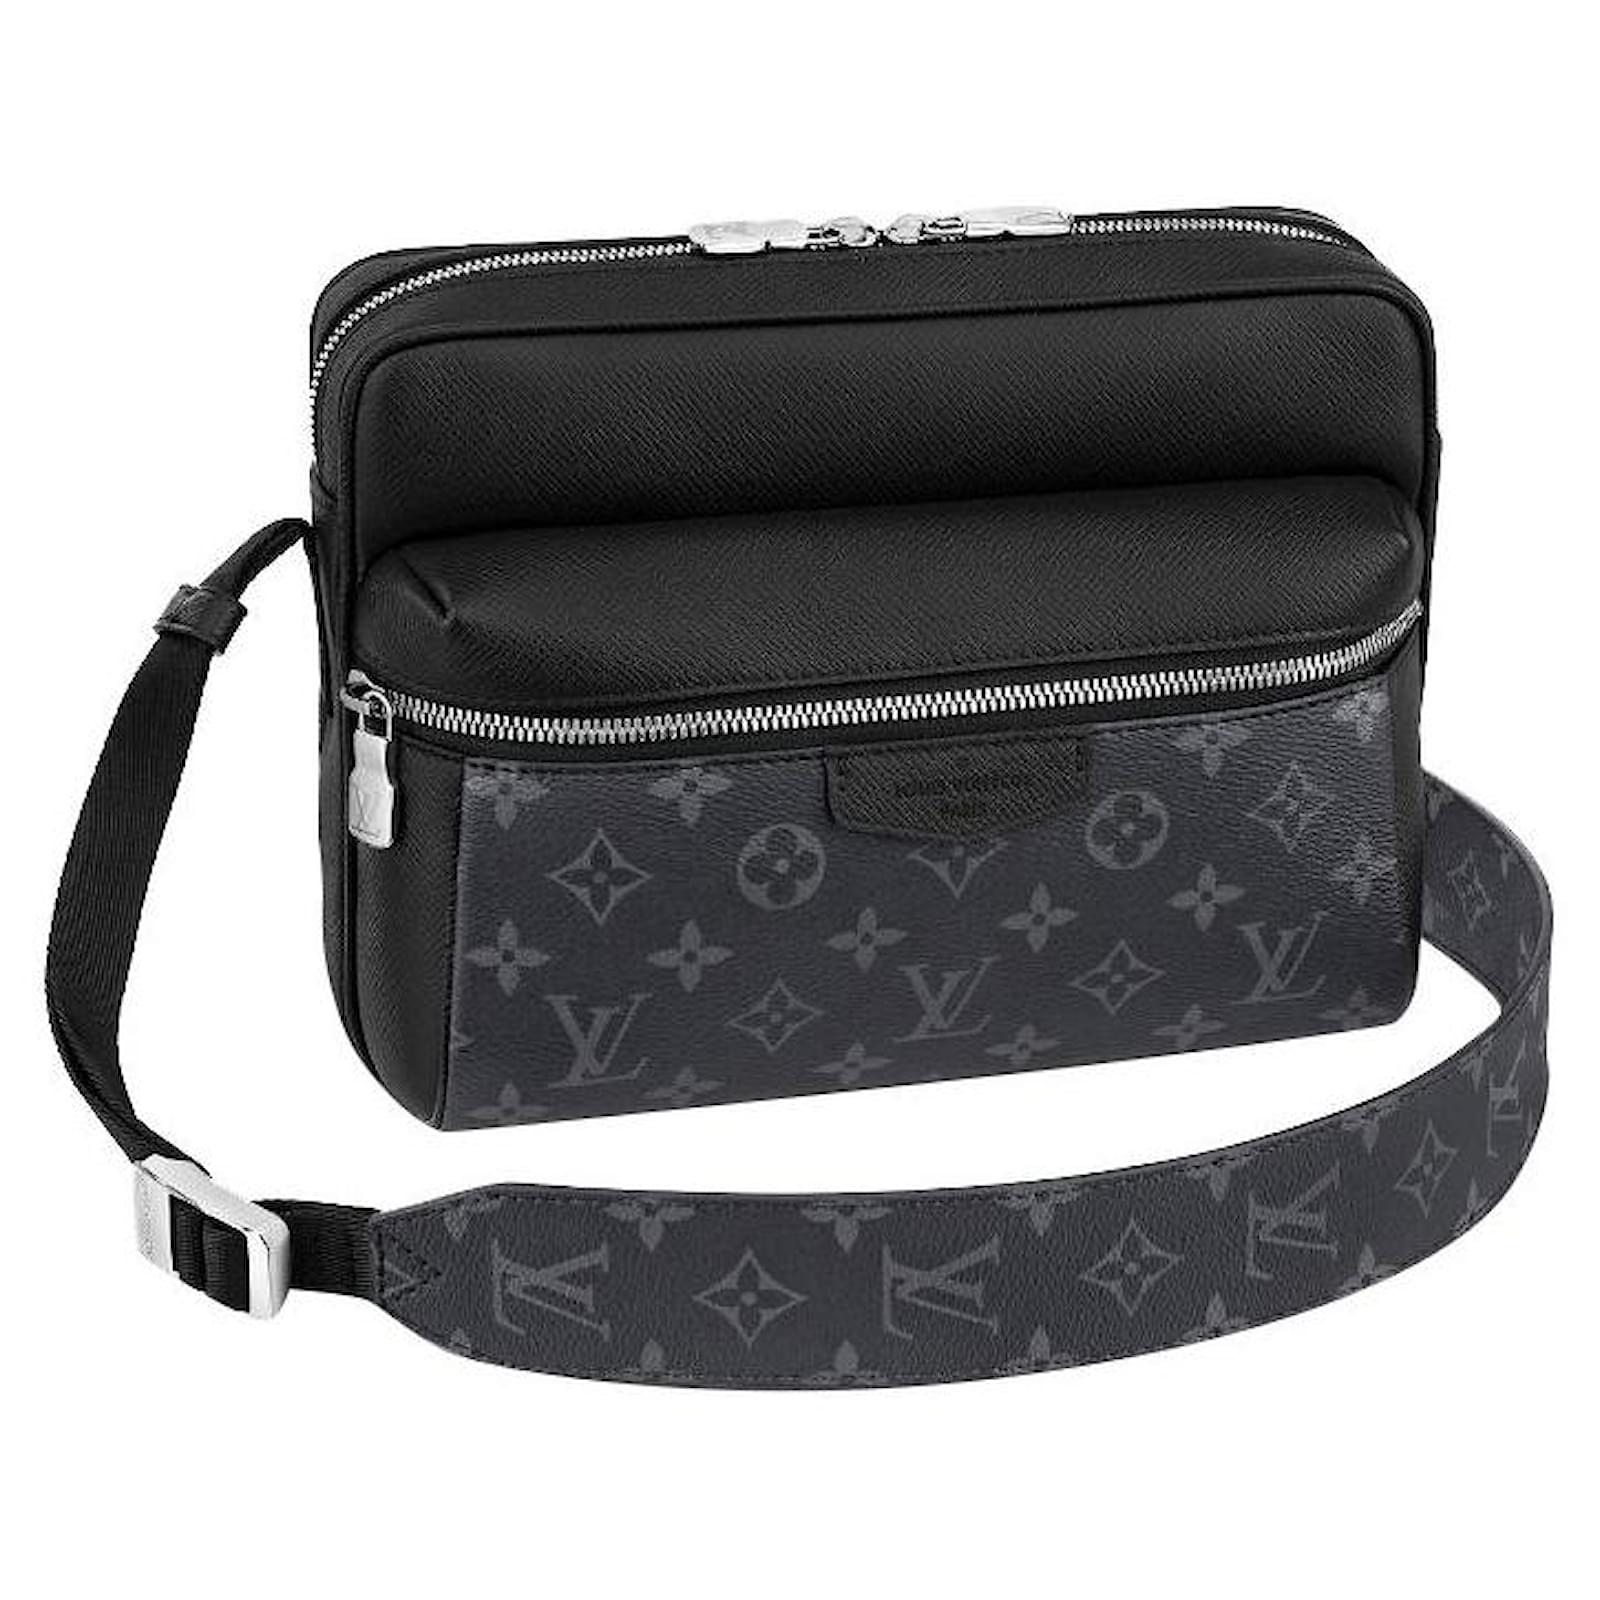 El exterior del Diseñador de Louis Vuitton bolsos y accesorios de